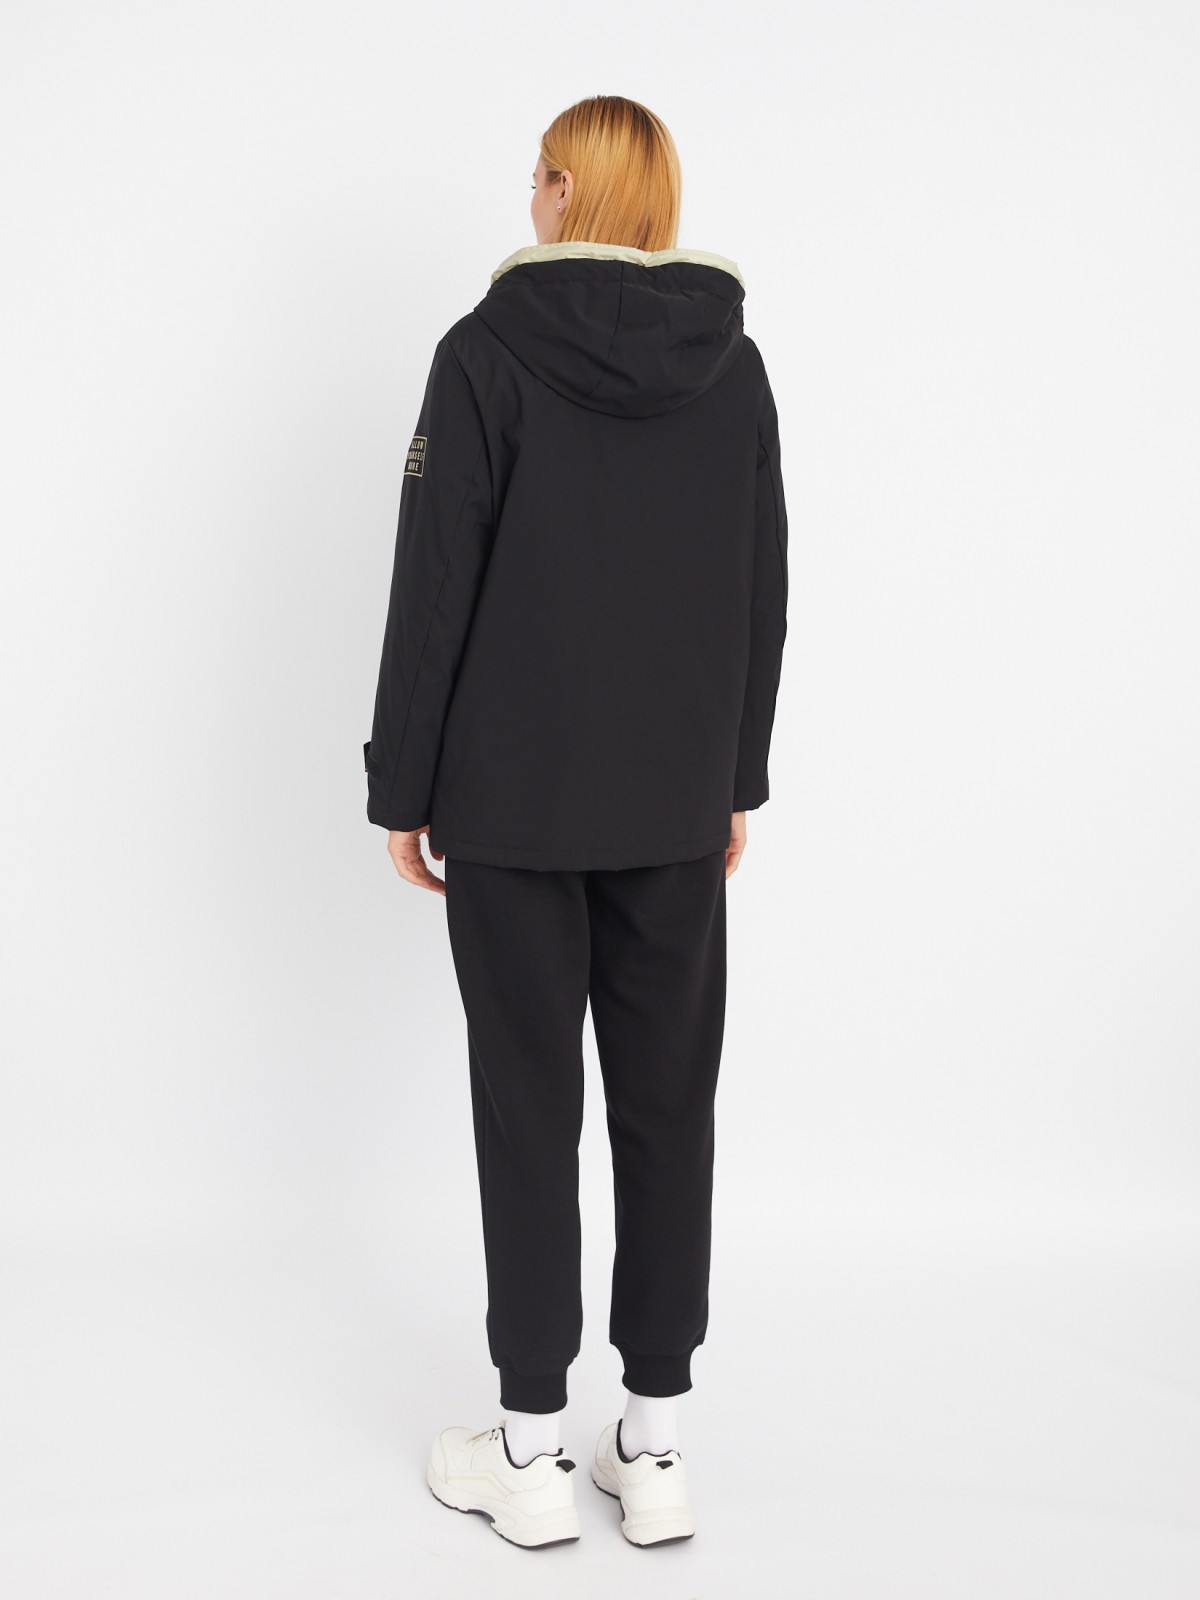 Укороченная куртка-парка на синтепоне с капюшоном zolla 023335161374, цвет черный, размер S - фото 6